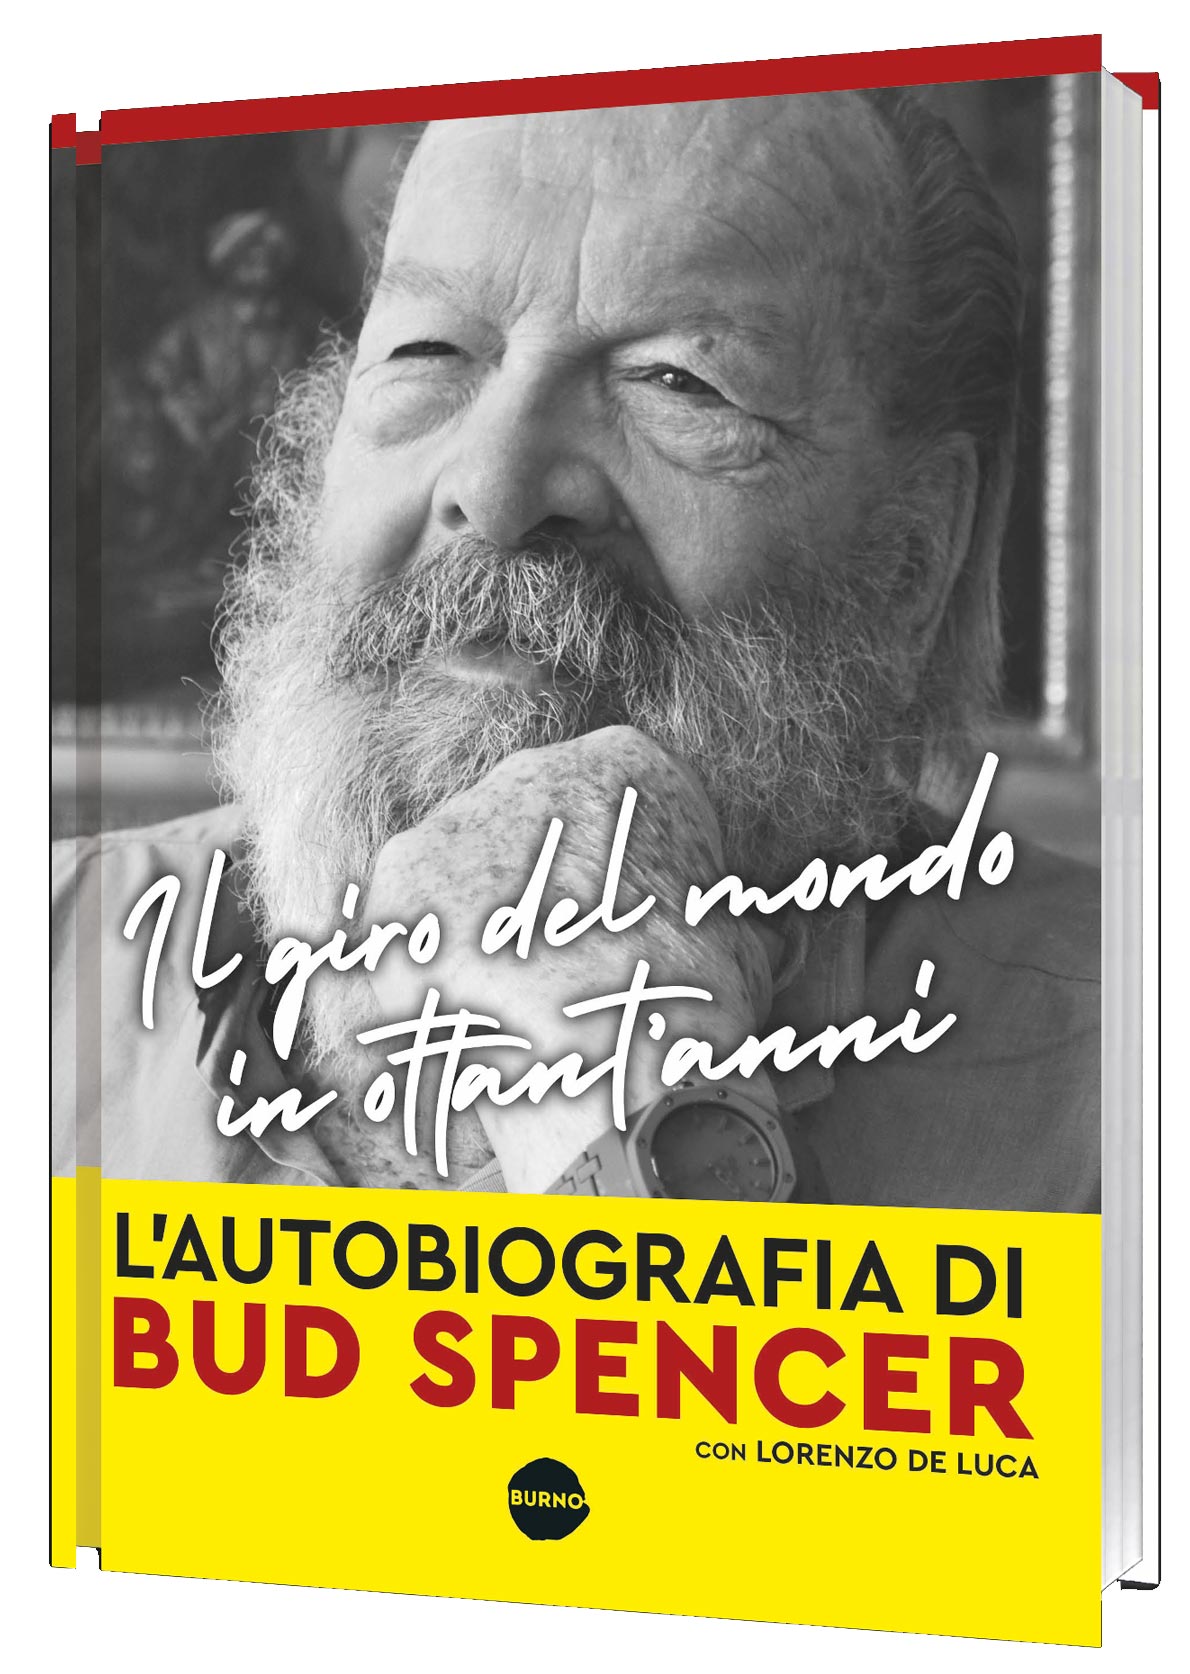 Bud Spencer Biografia - Scopri la vita e la carriera leggendaria di Bud Spencer, da campione di nuoto ad icona del cinema italiano.